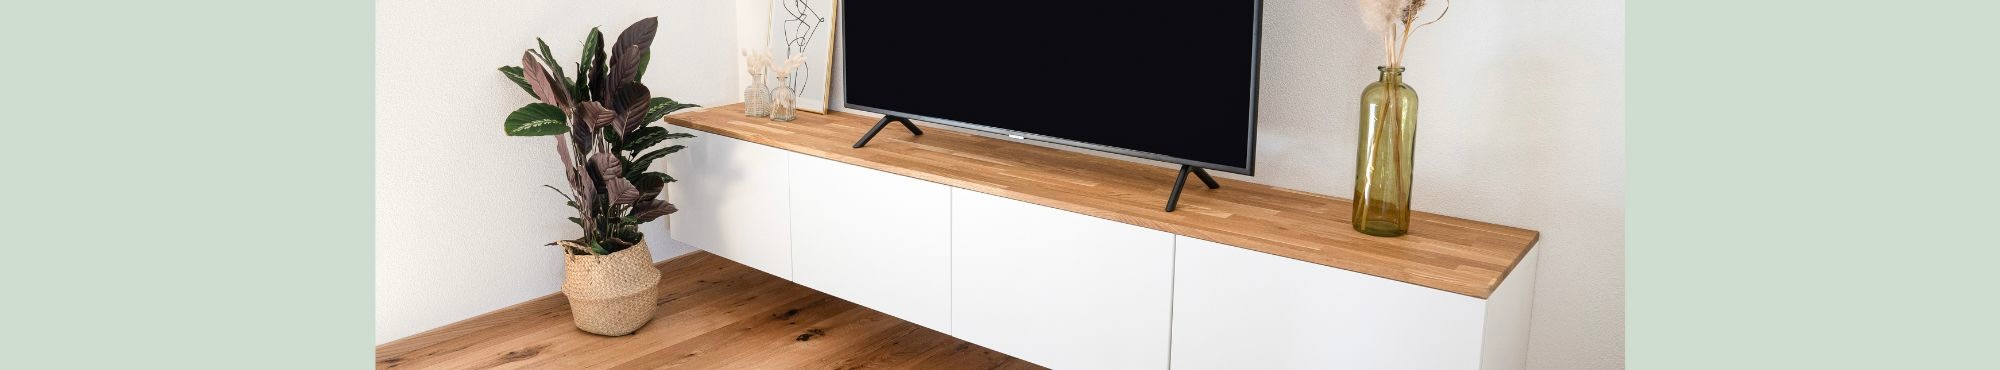 Ikea Besta TV-Board mit Deckplatte aus Holz